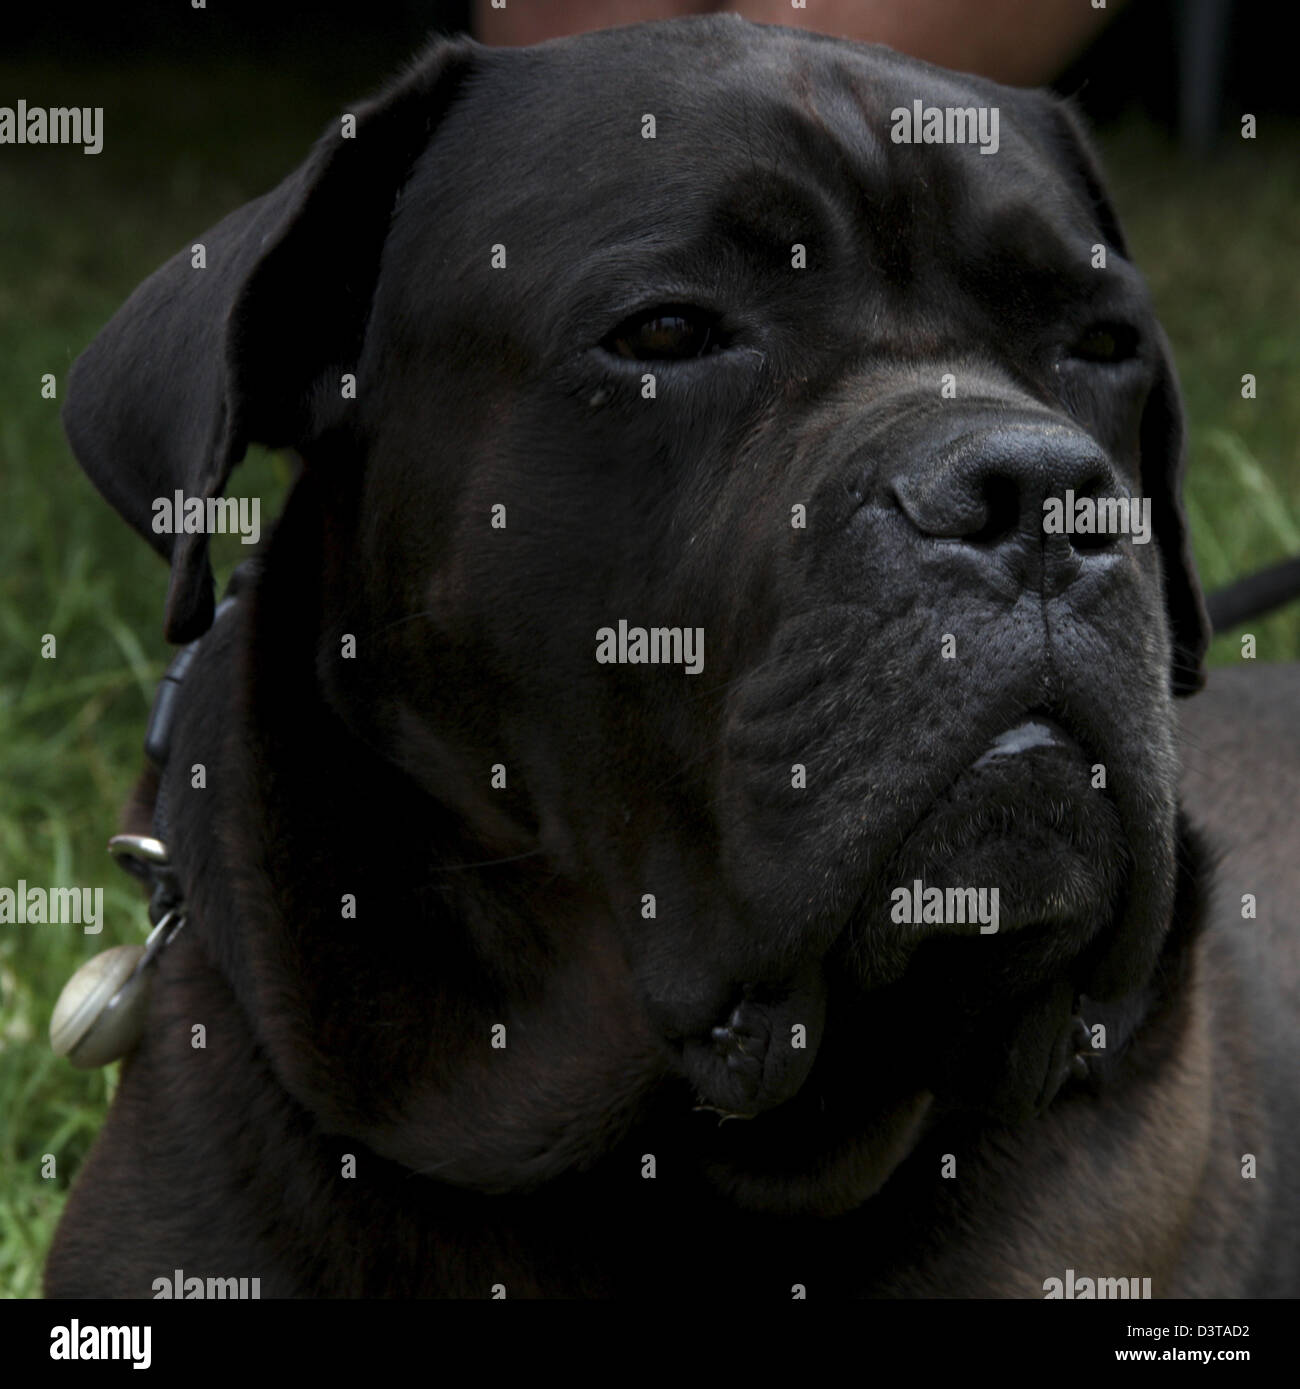 Cane Corso, Dog Stock Photo